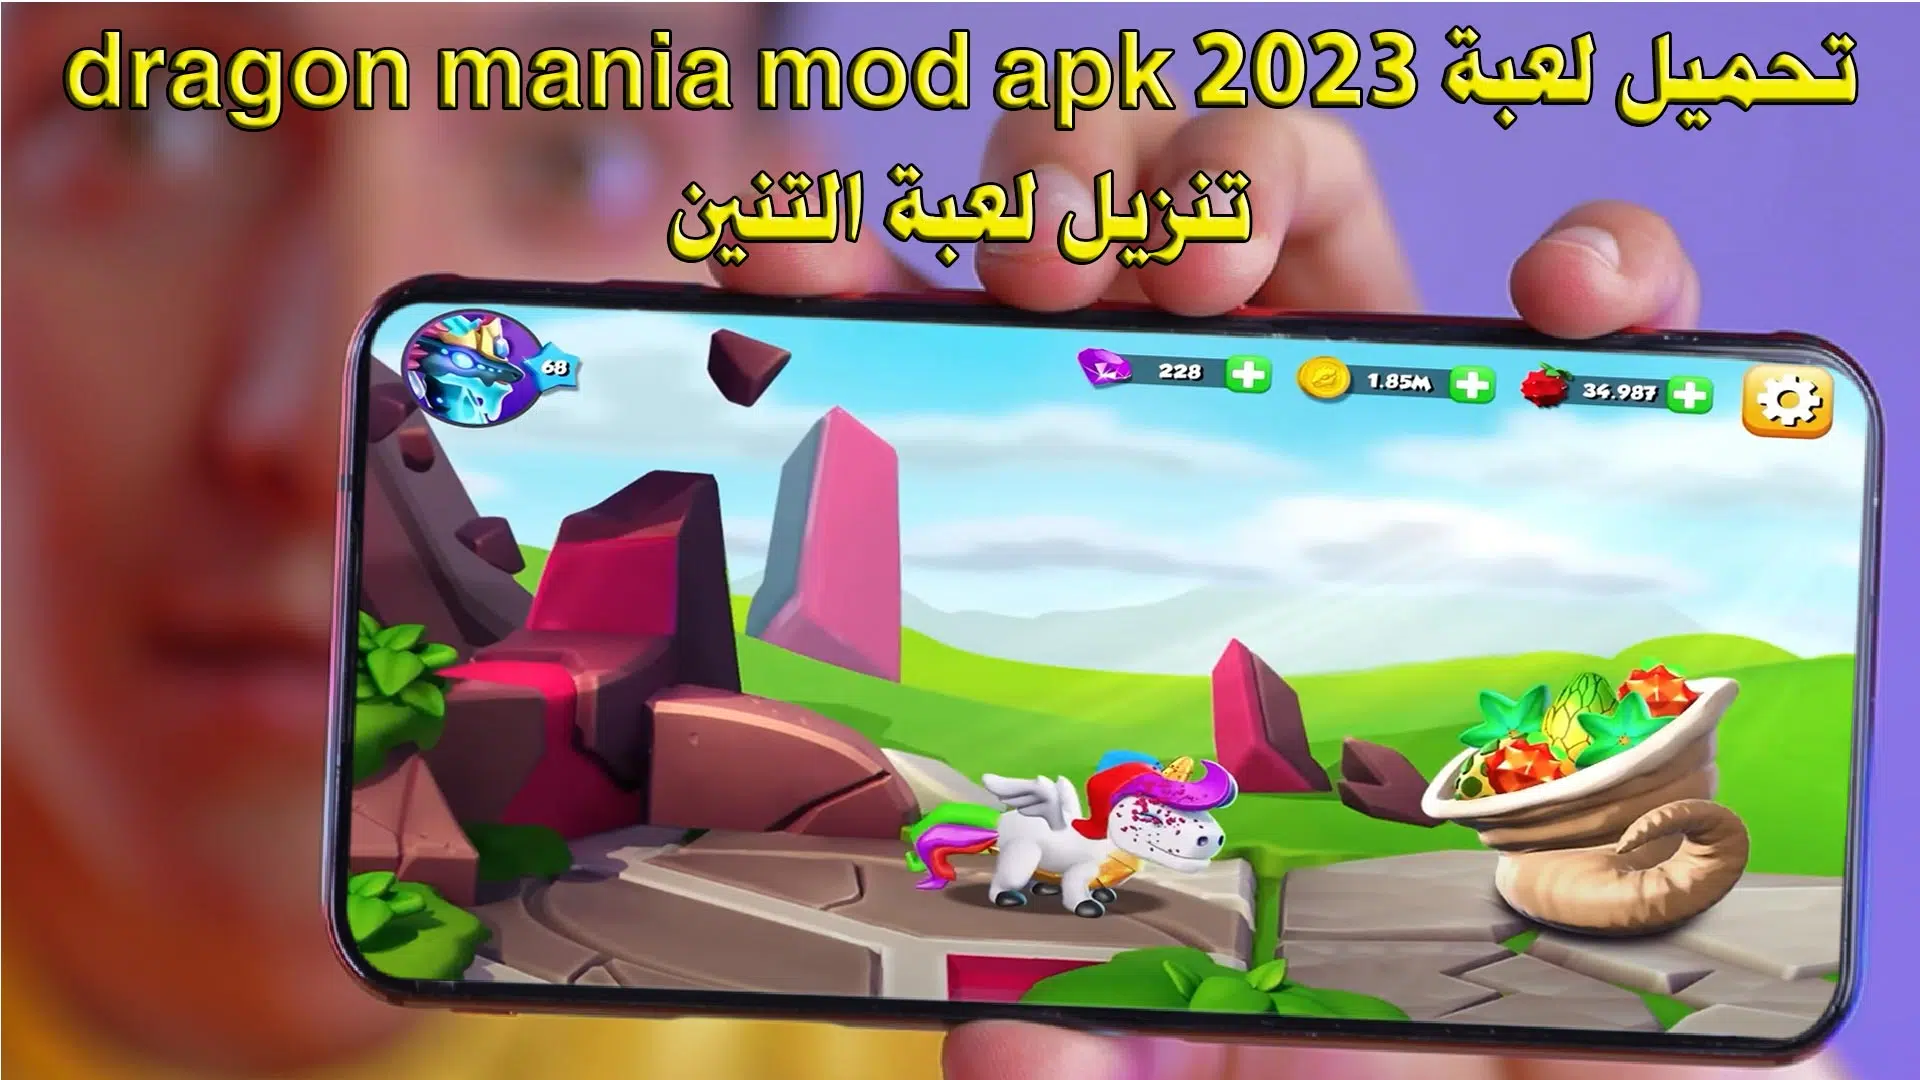 تحميل لعبة dragon mania mod apk 2023 - تنزيل لعبة التنين .